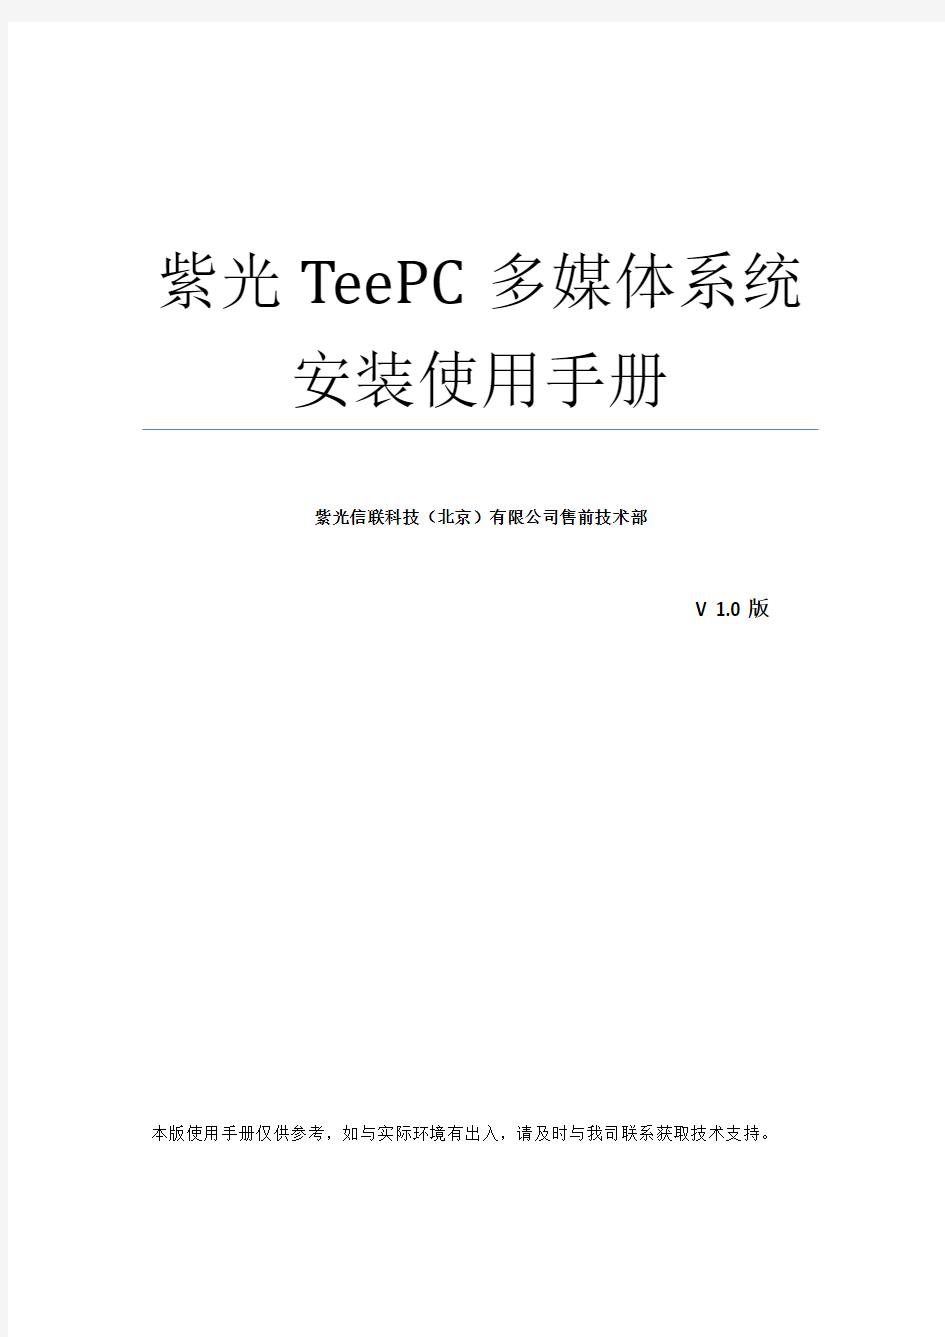 紫光云终端TeePC多媒体教室系统用户手册